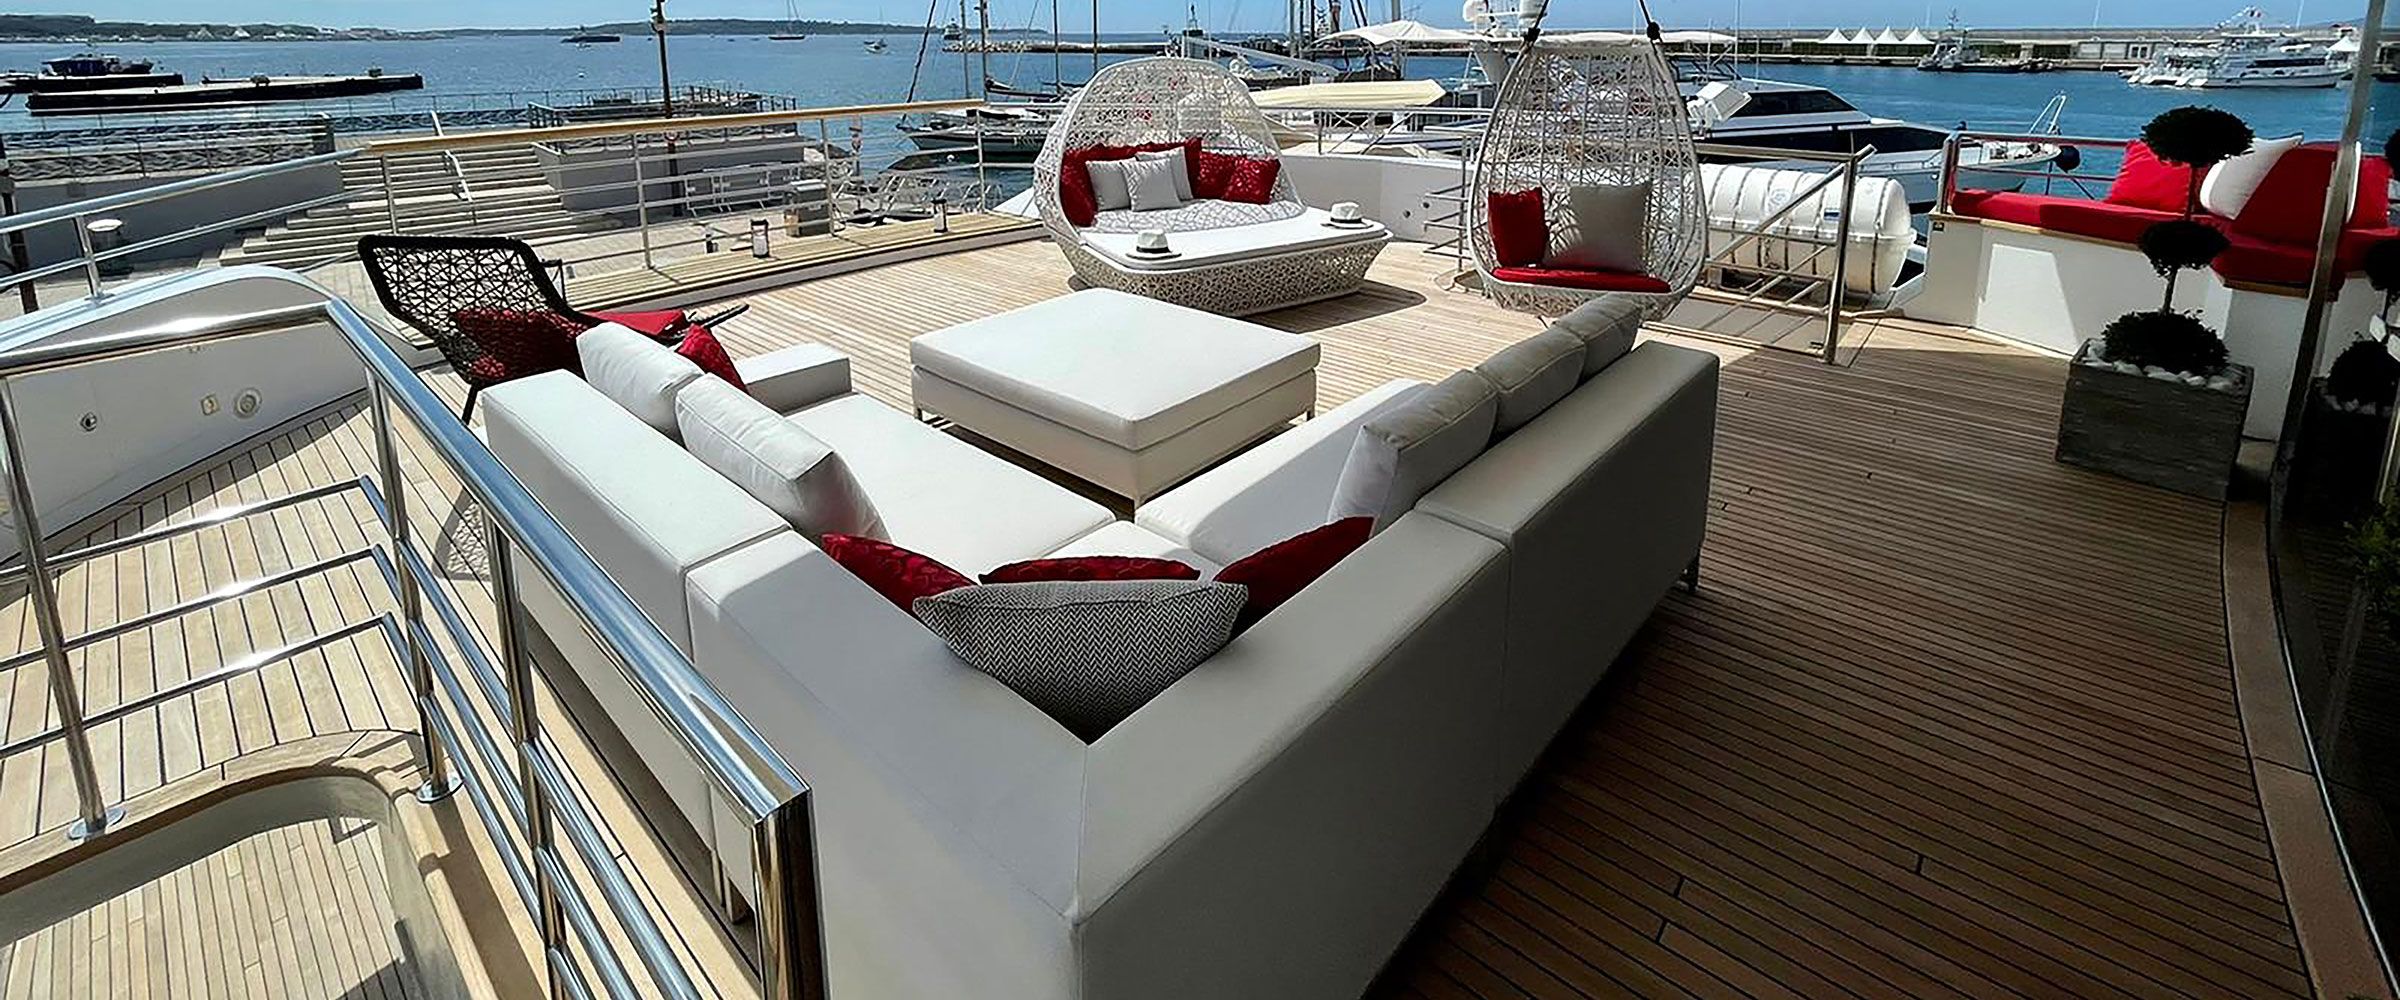 Nova Design – Maritime Polster, Markisen und Abdeckung Kroatien Zadar | Sonnenmarkisen und Wandbelag für Boote Kroatien Zadar